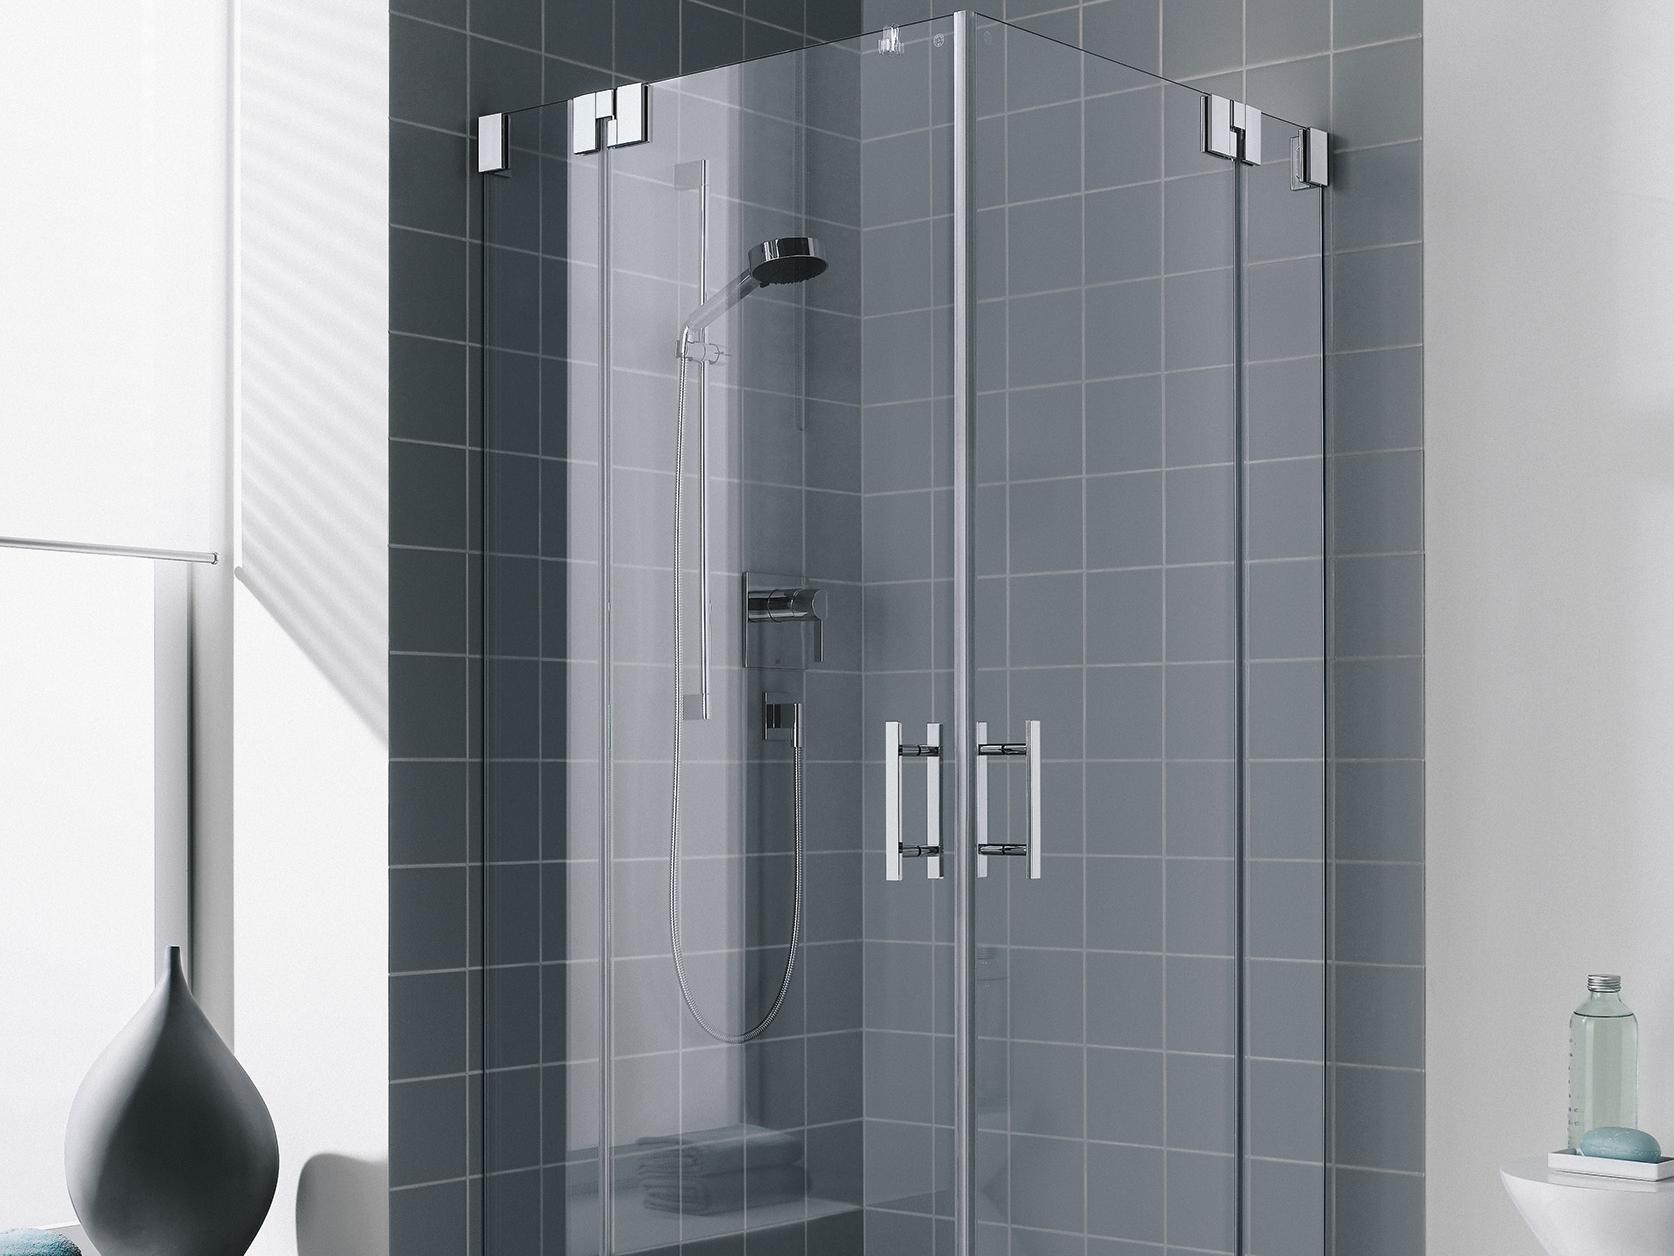 Zawiasowa kabina prysznicowa Kermi FILIA, wejście narożne 2-częściowe (drzwi wahadłowe z polami stałymi) – 1 połowa